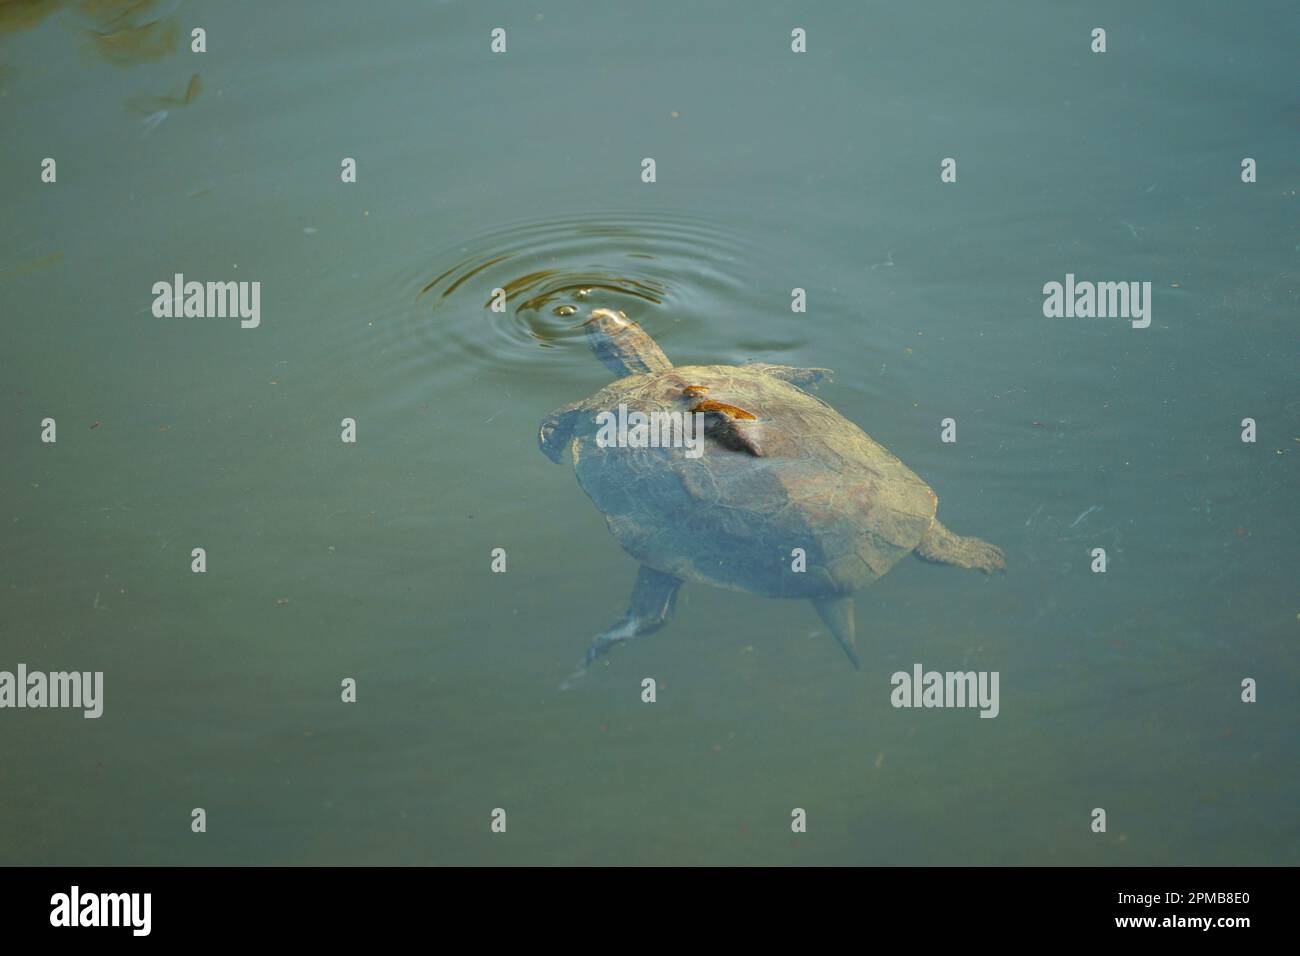 Tartaruga nuoto in un fiume, acqua di ruscello, tartaruga conchiglia, schwimmen Schildkröte Rhodos Rodi Griechenland Grecia Foto Stock